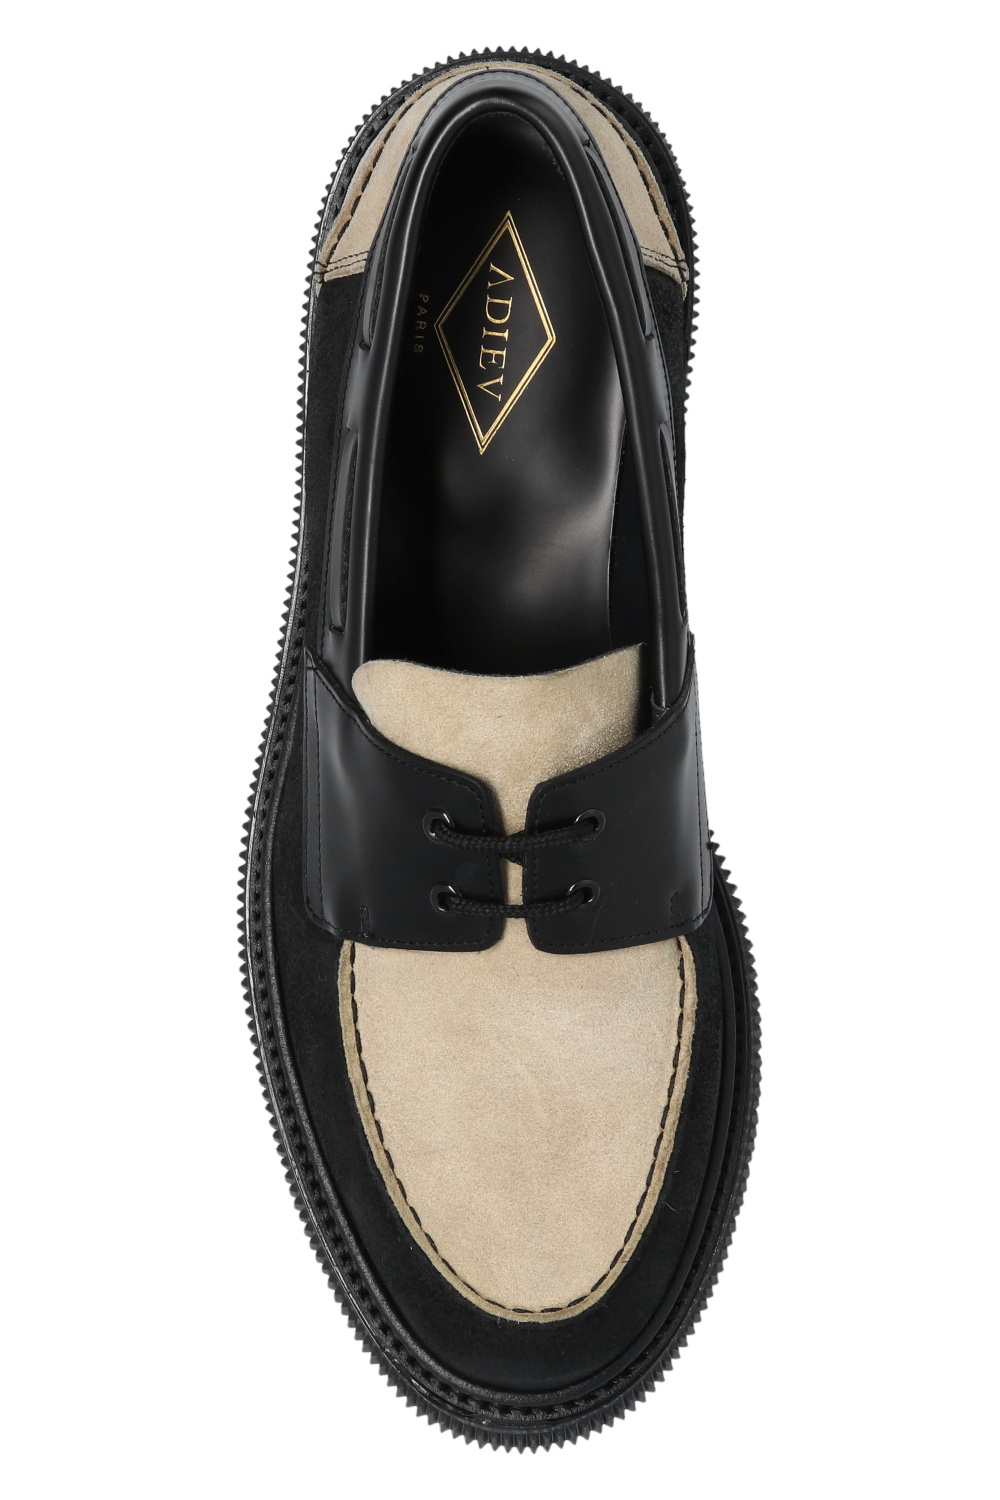 Adieu Paris ‘Type 174’ leather marrones shoes